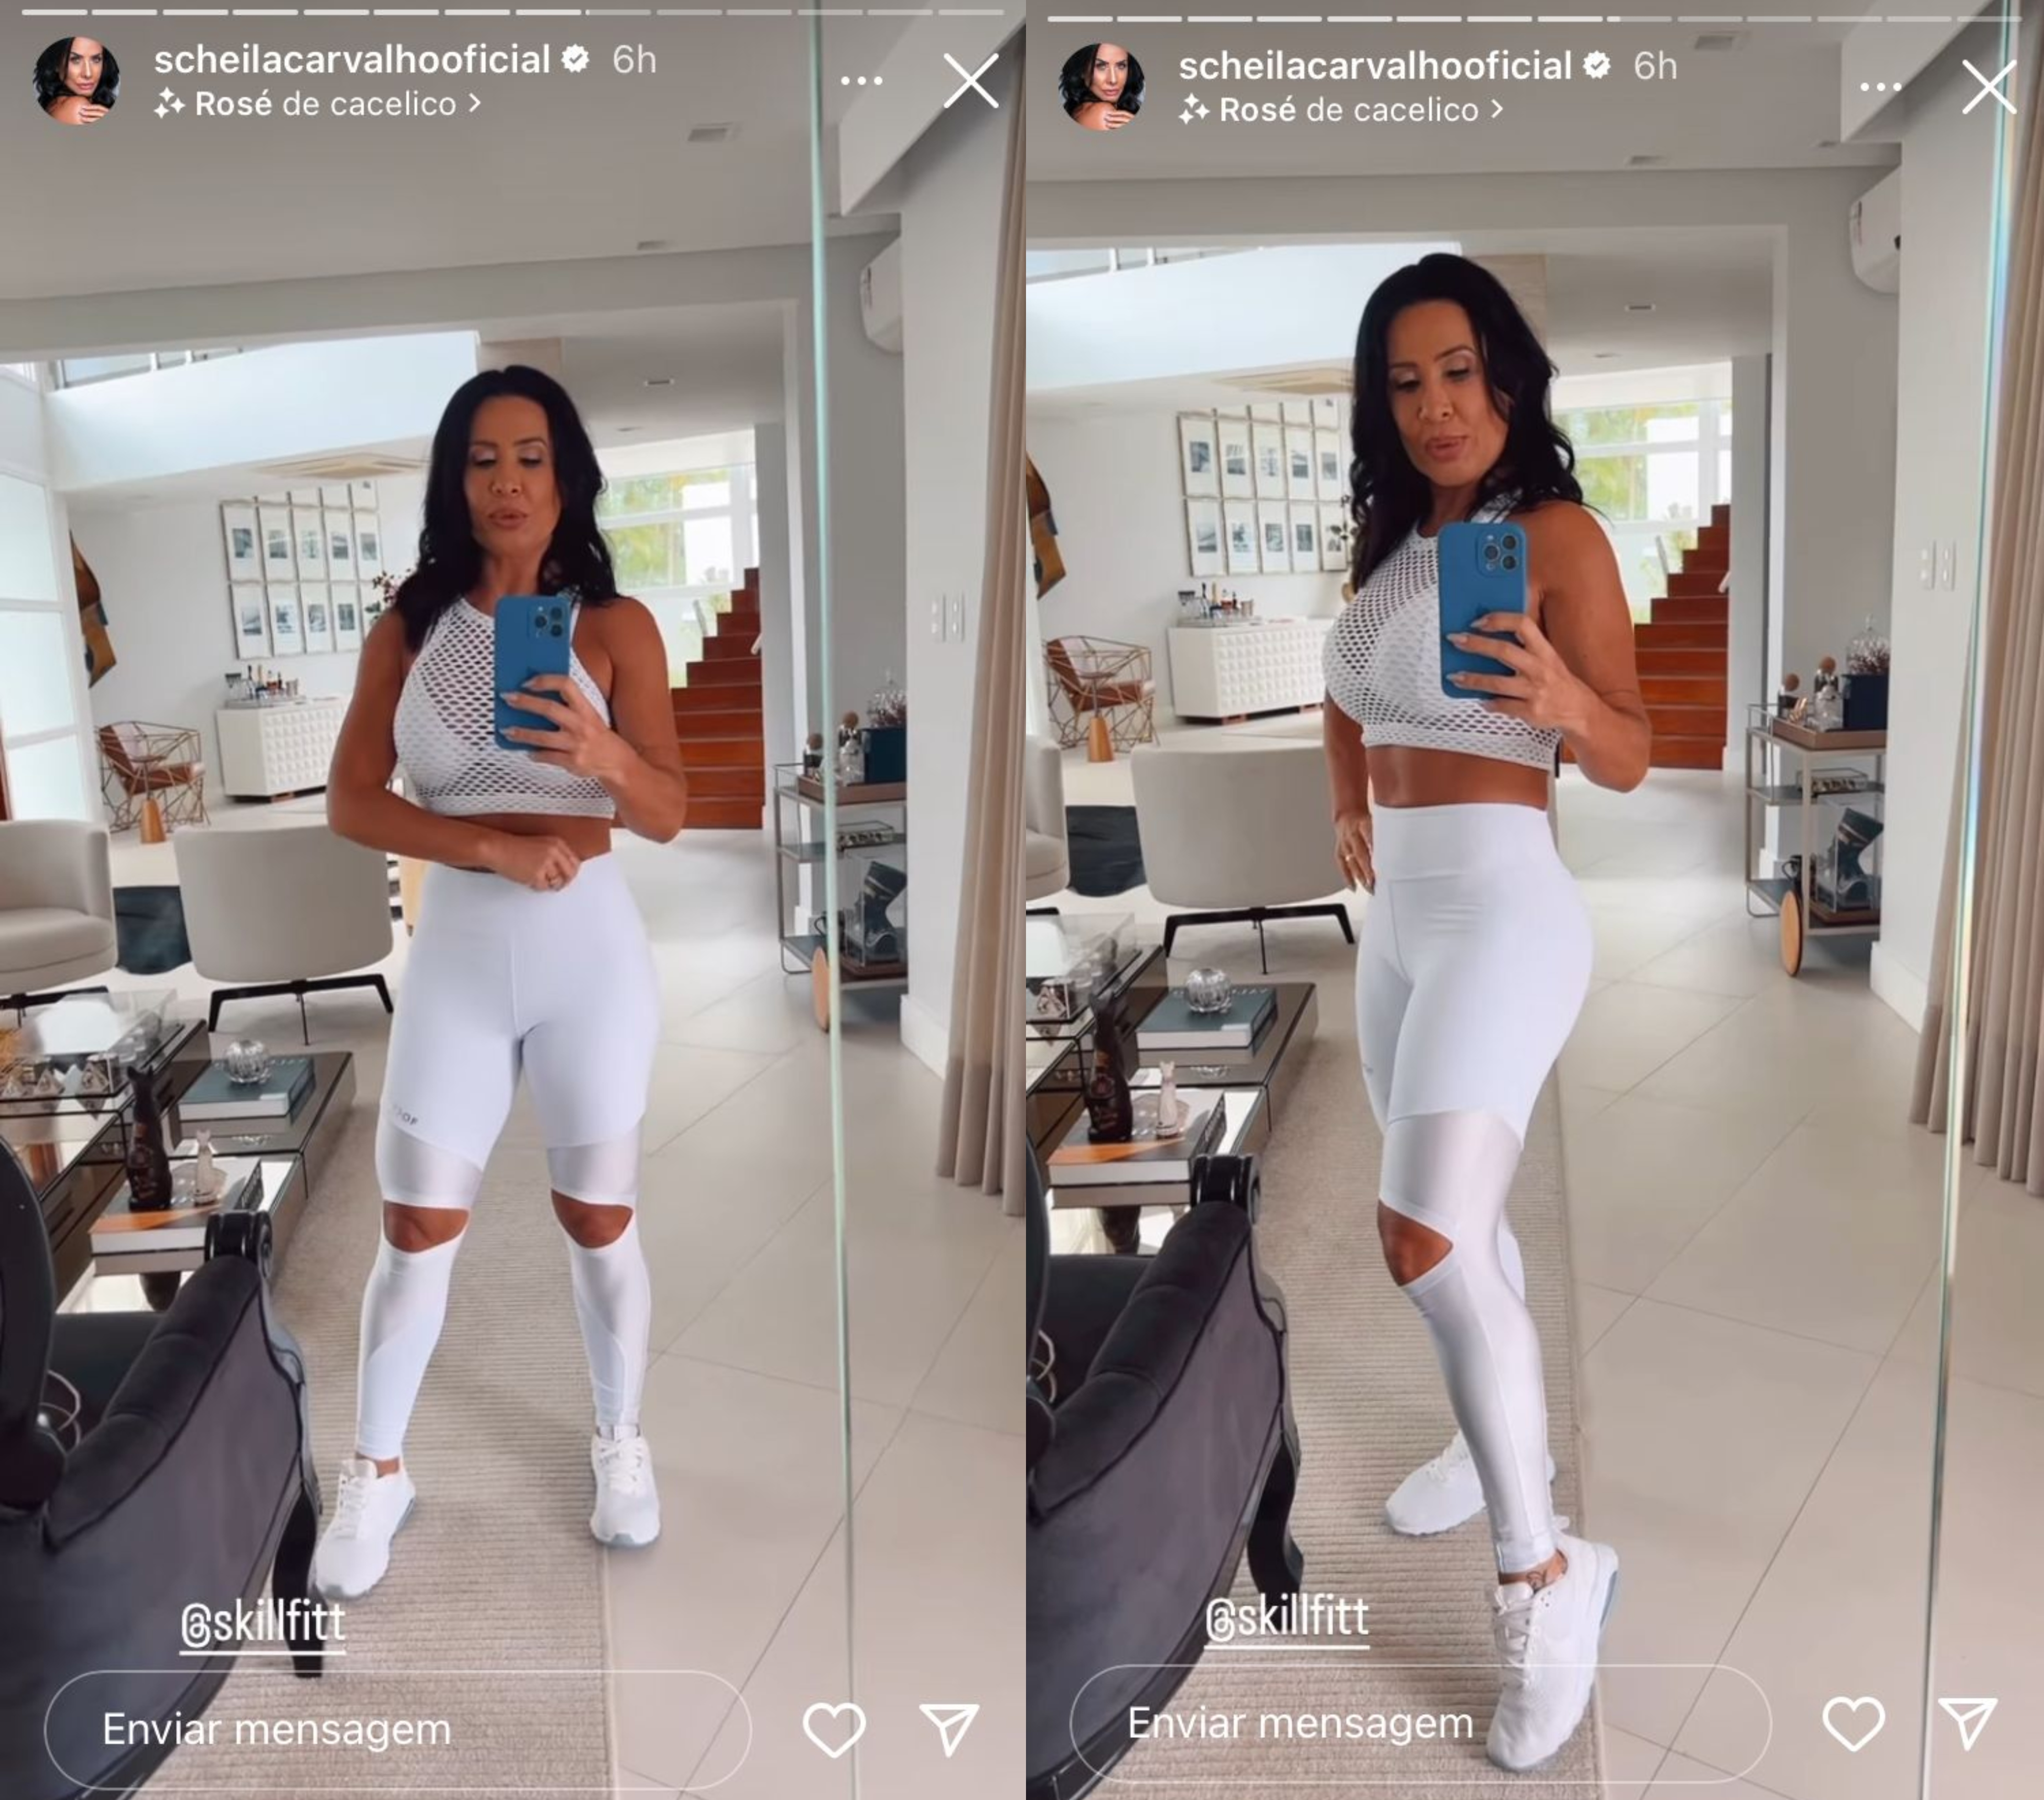 Duas imagens de Scheila Carvalho no espelho de sua casa usando um top, uma leggin e um tênis branco. Na primeira ela estpa de frente e na segunda de lado